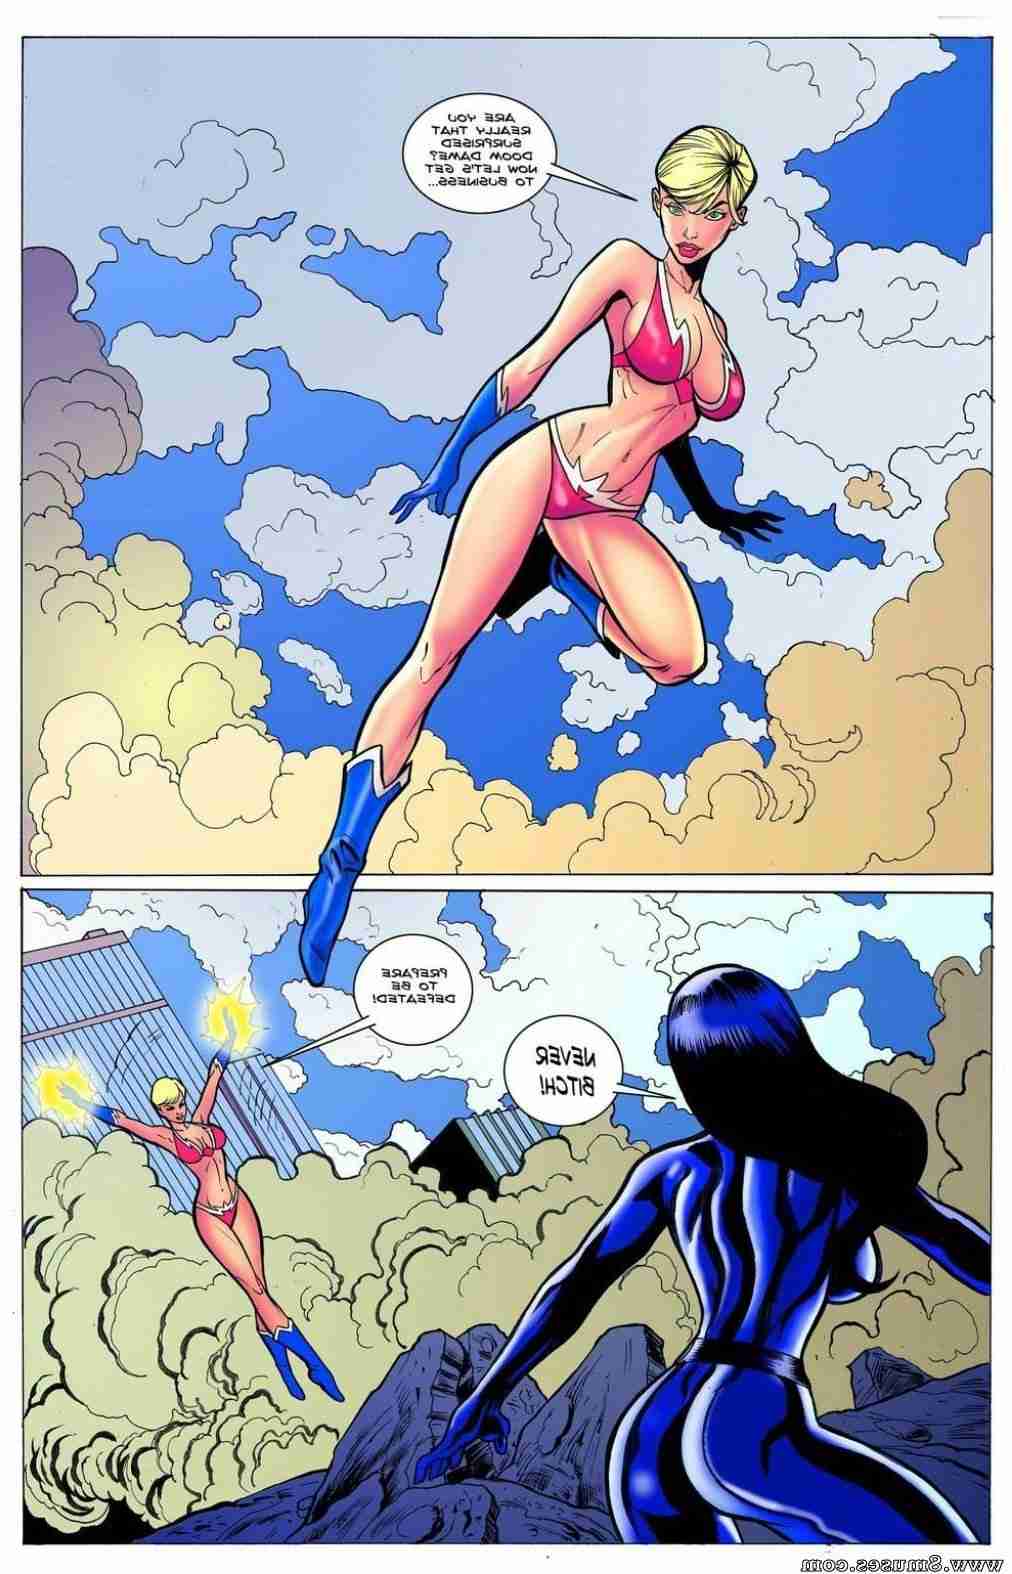 BE-Story-Club-Comics/Super-BEro-Origins Super_BEro_Origins__8muses_-_Sex_and_Porn_Comics_5.jpg